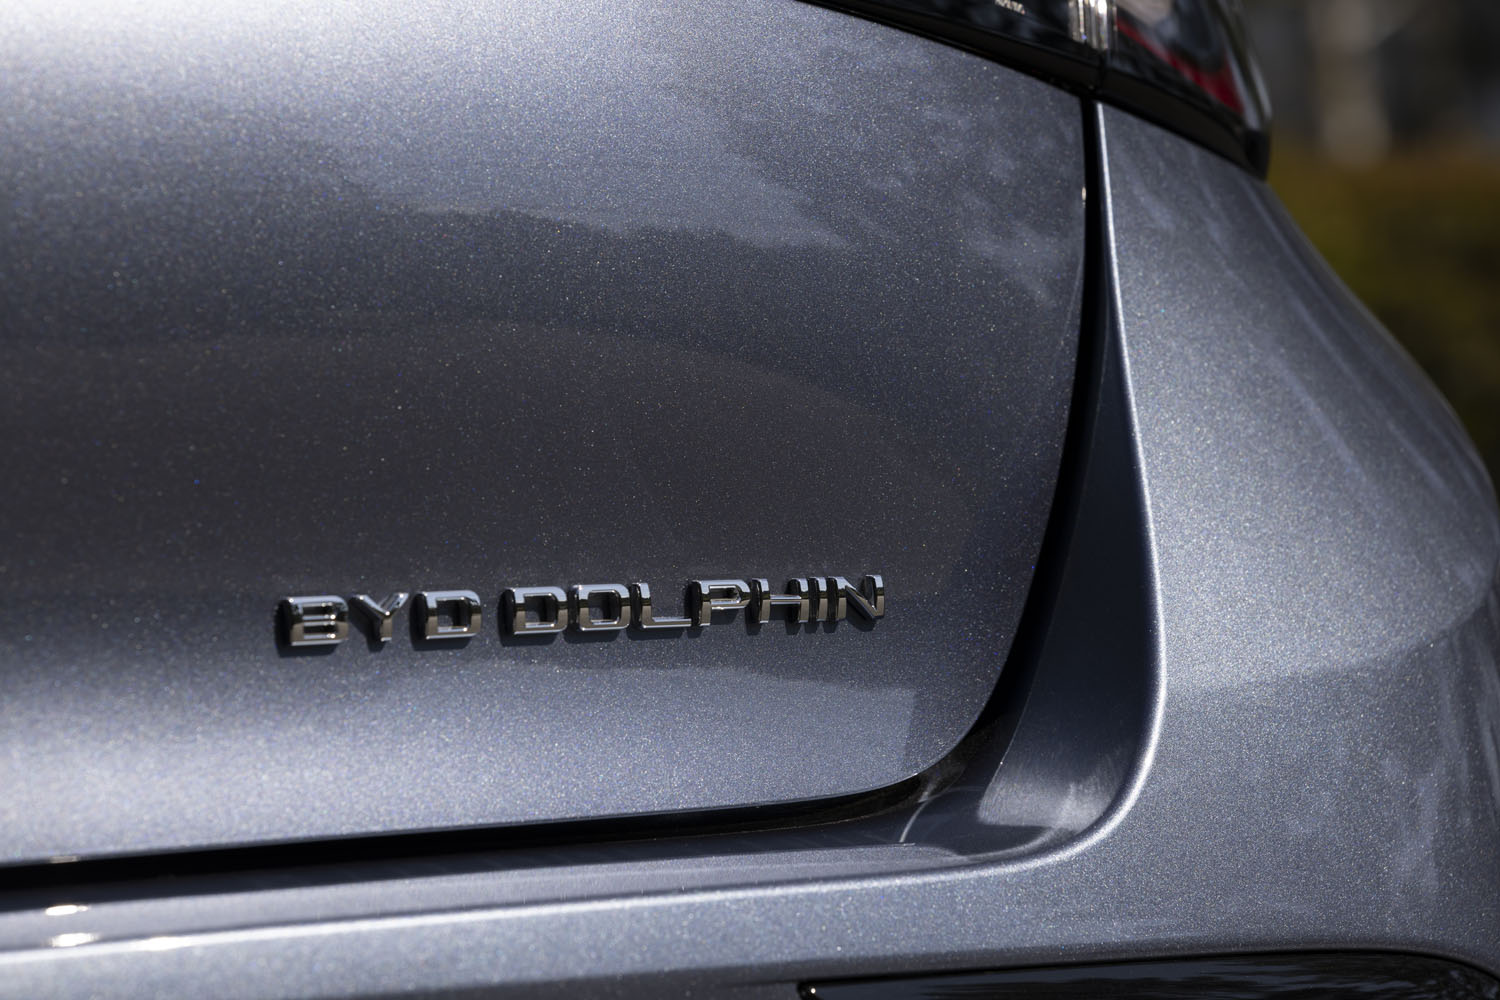 リアに貼られた「BYD DOLPHIN」のバッジ。ブランド名と車名がセットになっているバッジは意外に少ない、